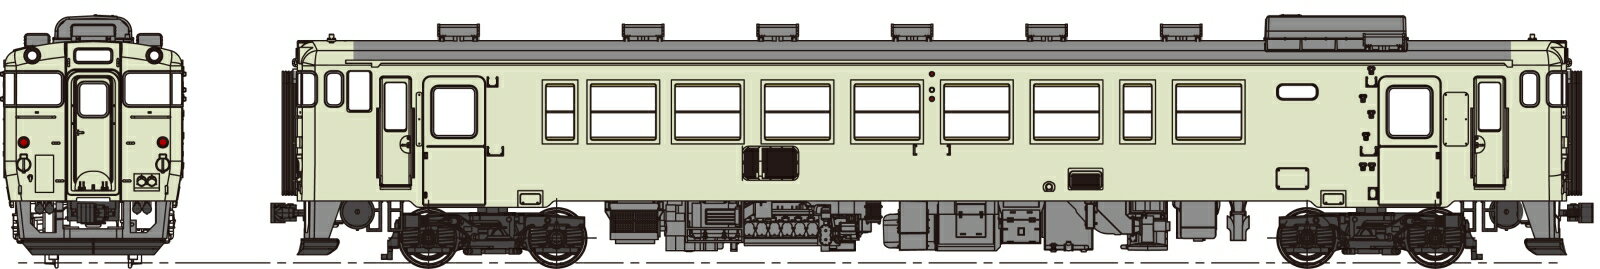 キハ40-500代クリーム10号、動力なし 【TW-K40-500ET】 (鉄道模型 HOゲージ)